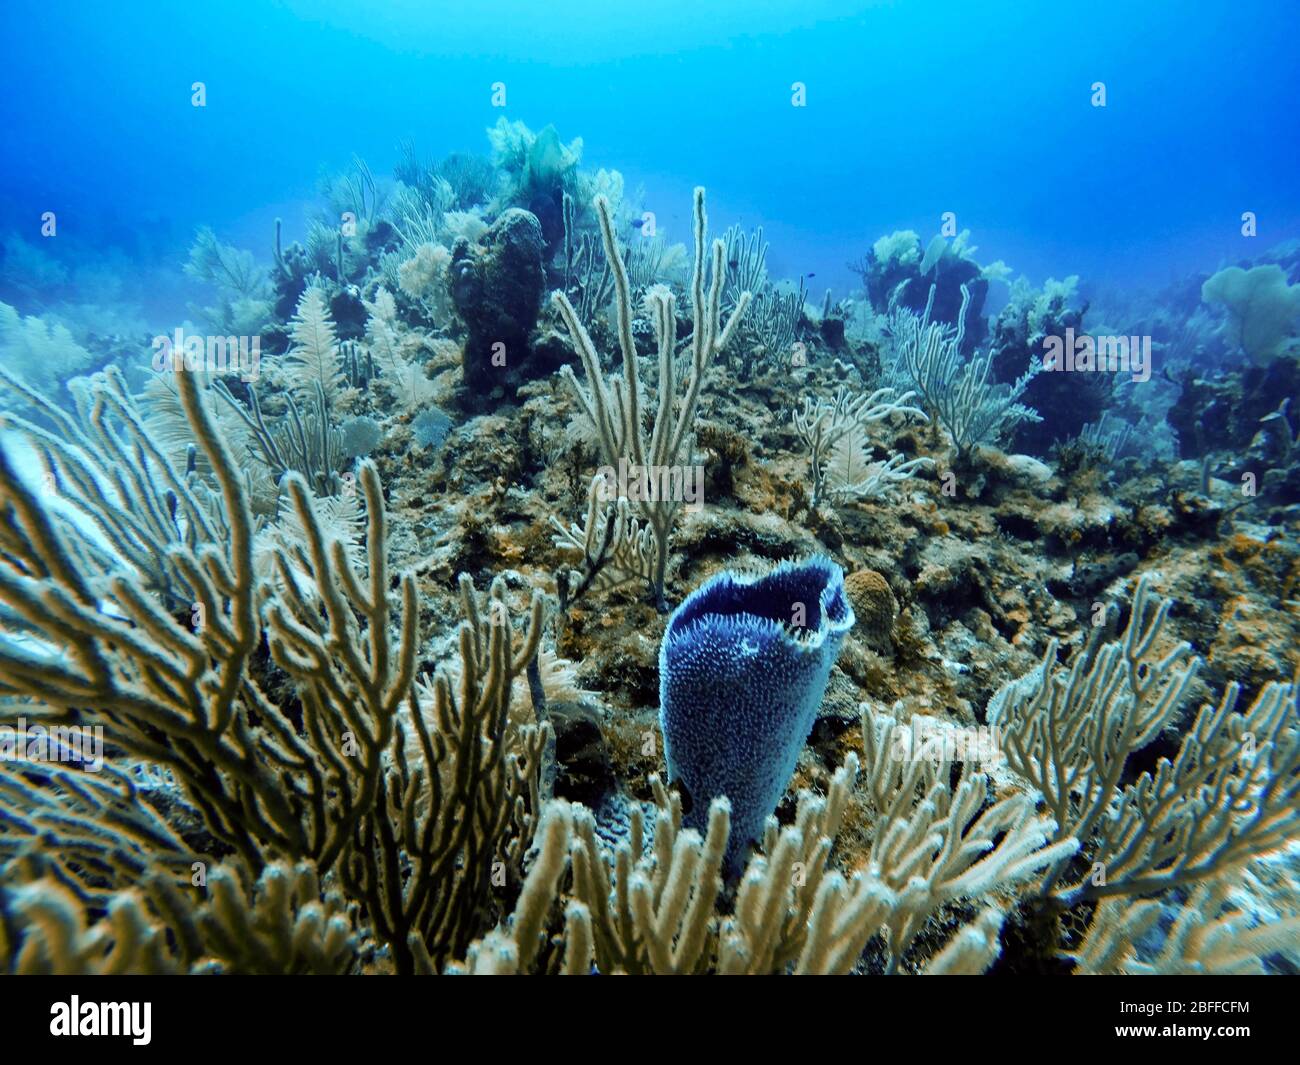 Vista submarina de cerca de pólipos de coral abiertos durante una inmersión, Cancún, Quintana Roo, México Foto de stock